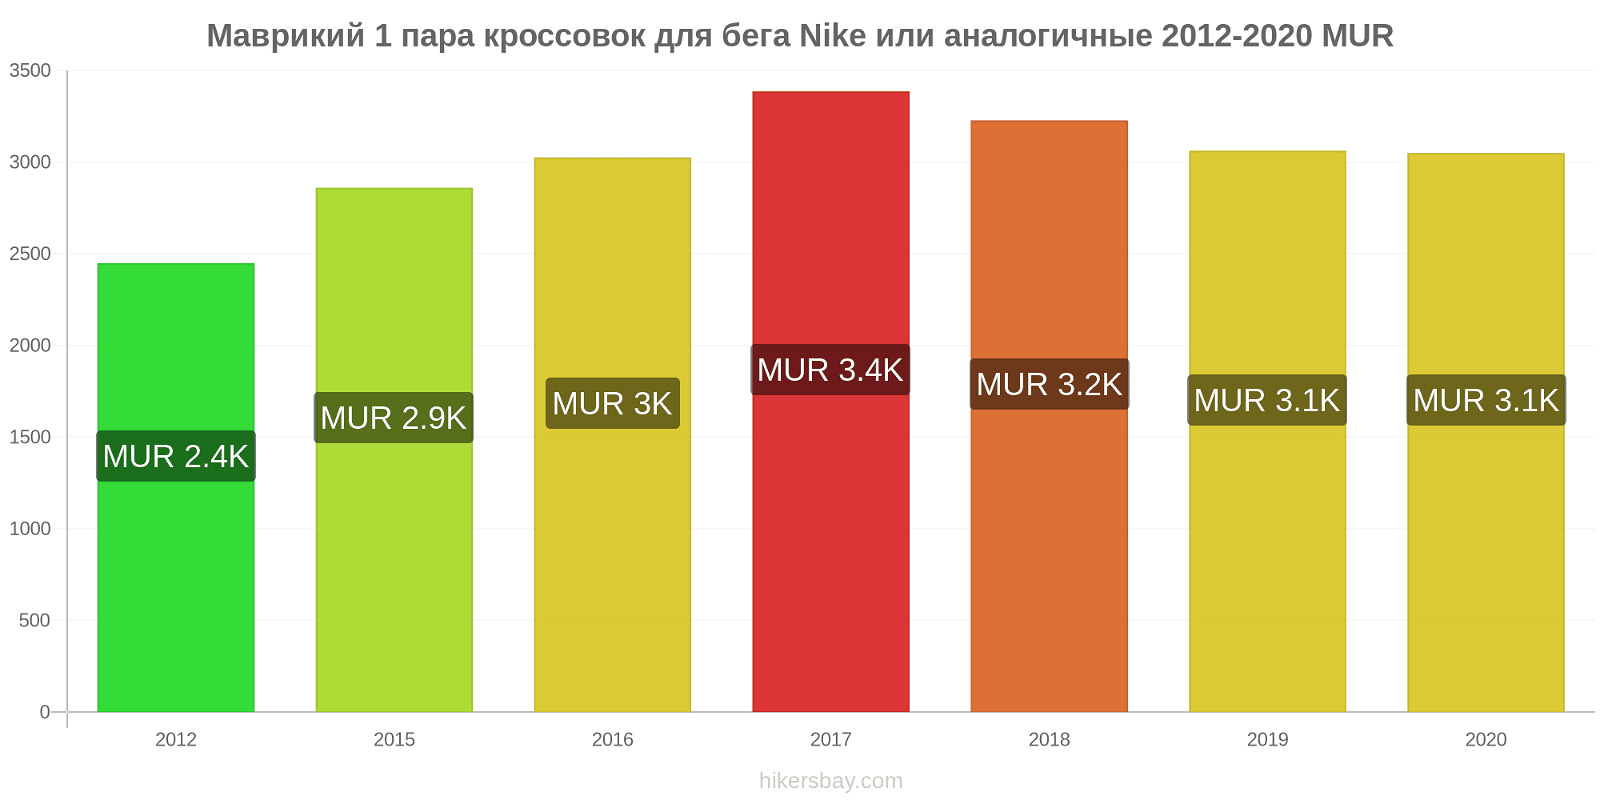 Маврикий изменения цен 1 пара кроссовок для бега Nike или аналогичные hikersbay.com